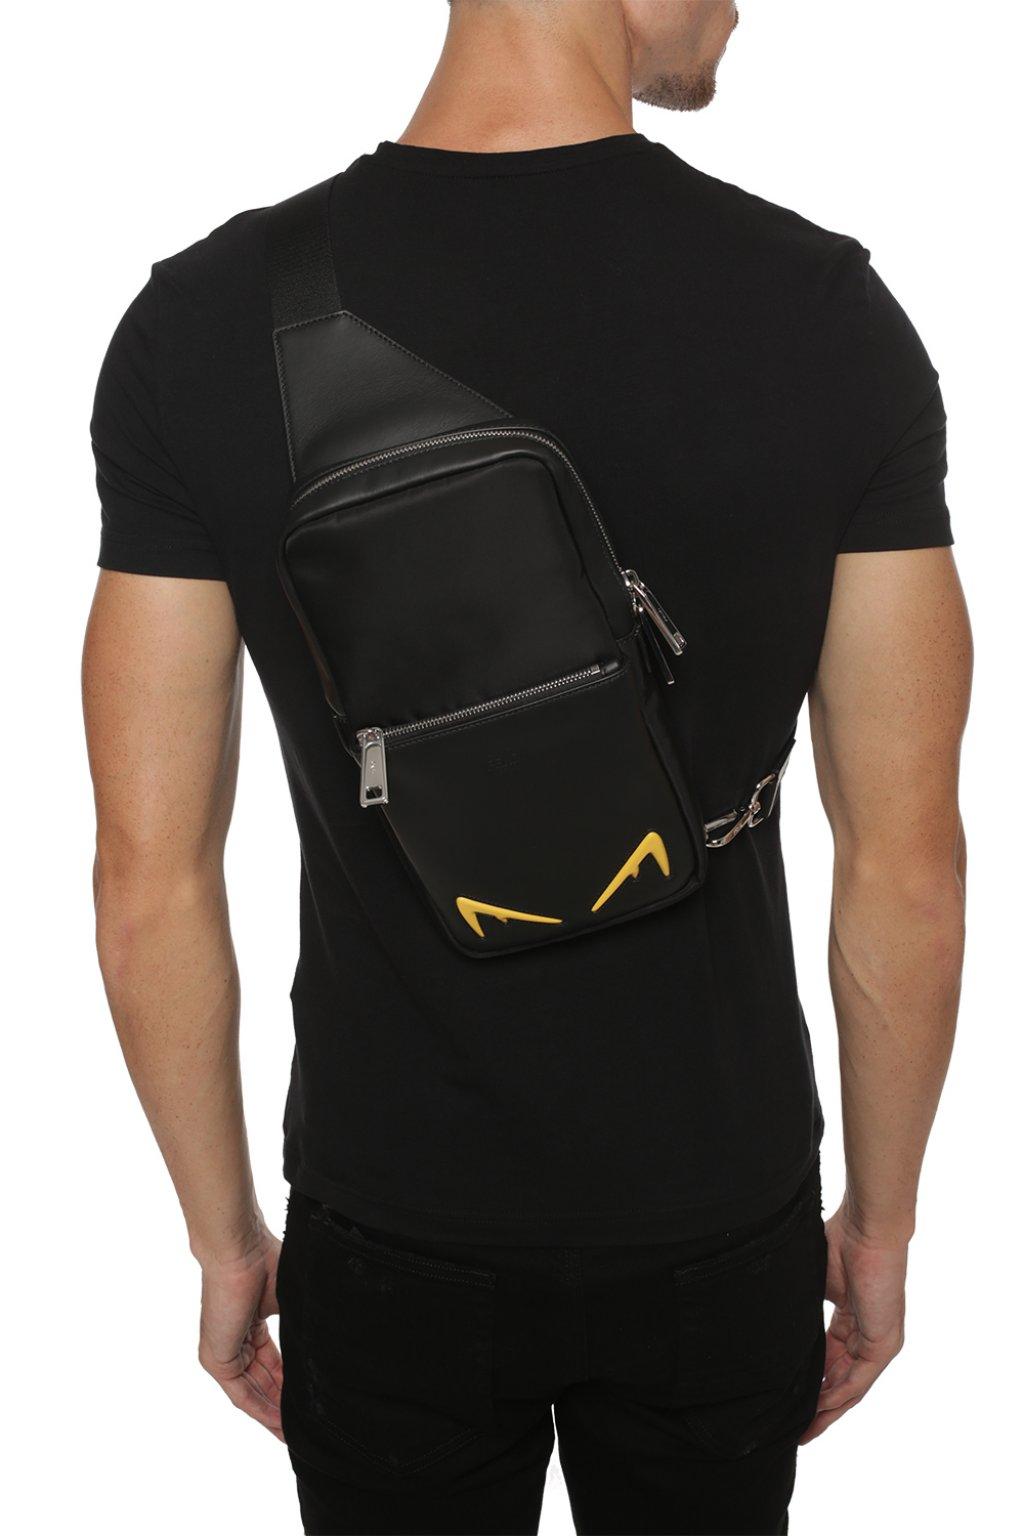 Fendi One-shoulder Backpack in Black for Men - Lyst